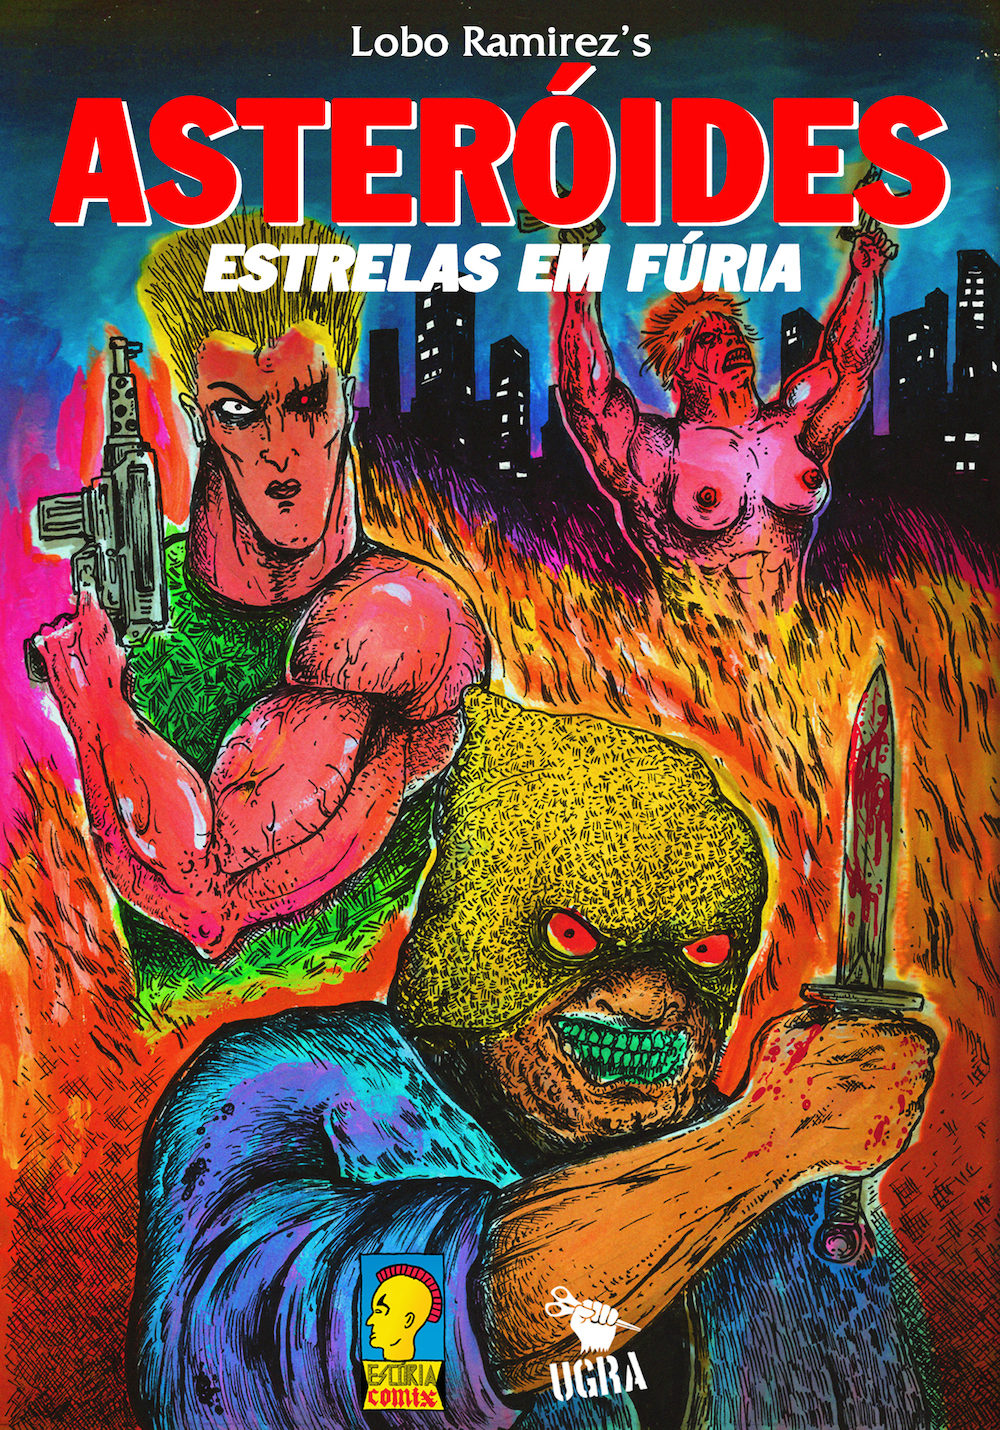 Asteróides – Estrelas em Fúria: confira a capa da nova HQ de Lobo Ramirez